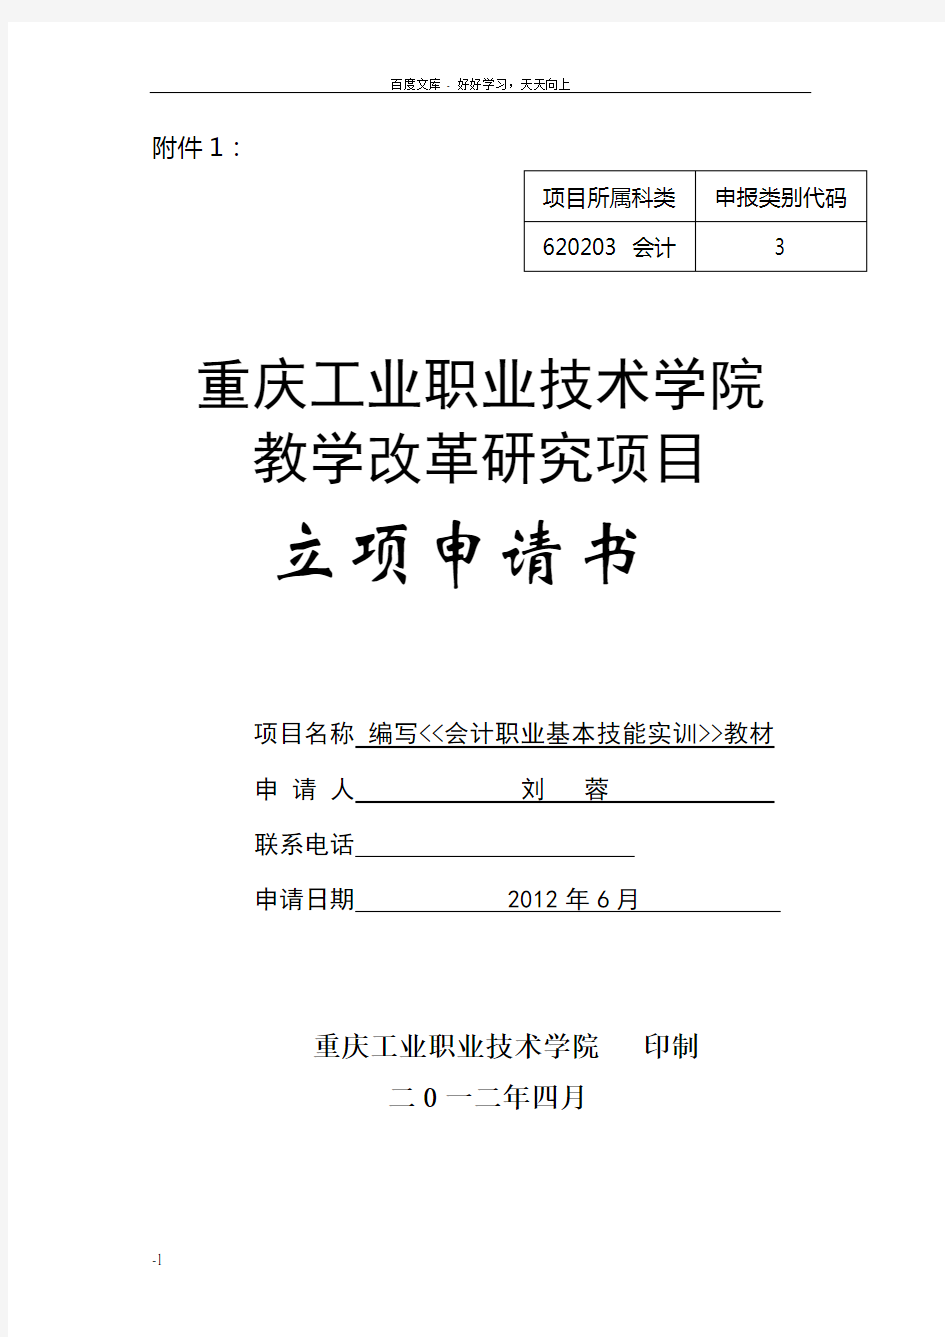 教改项目立项申请书(刘蓉613)